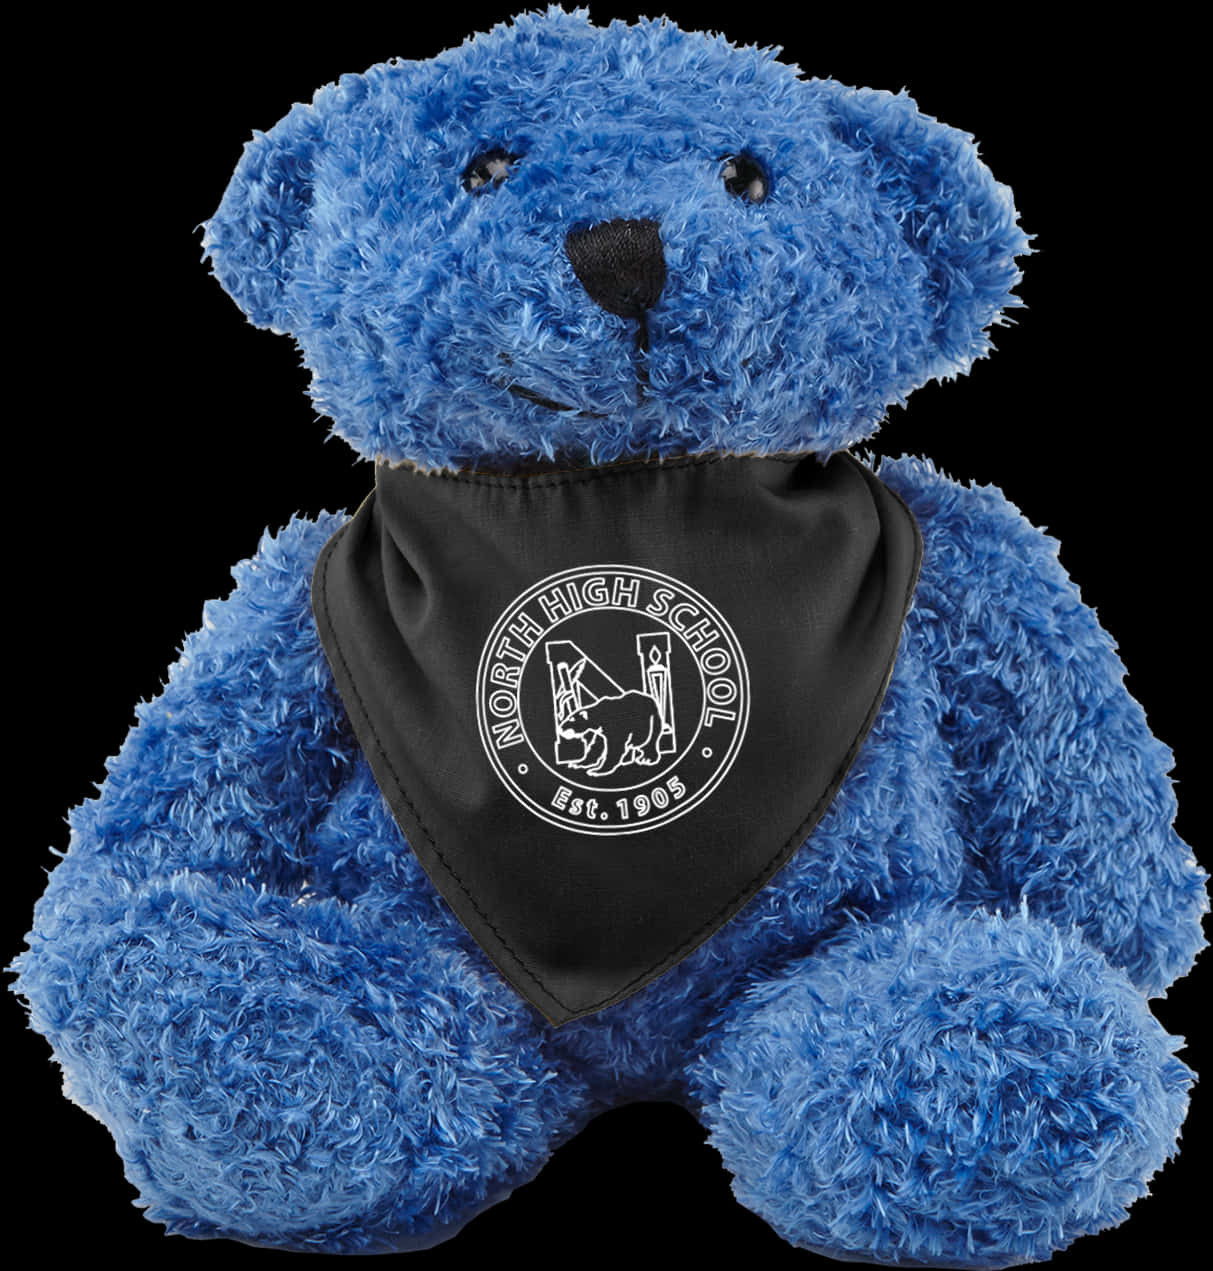 A Blue Teddy Bear With A Black Bandana